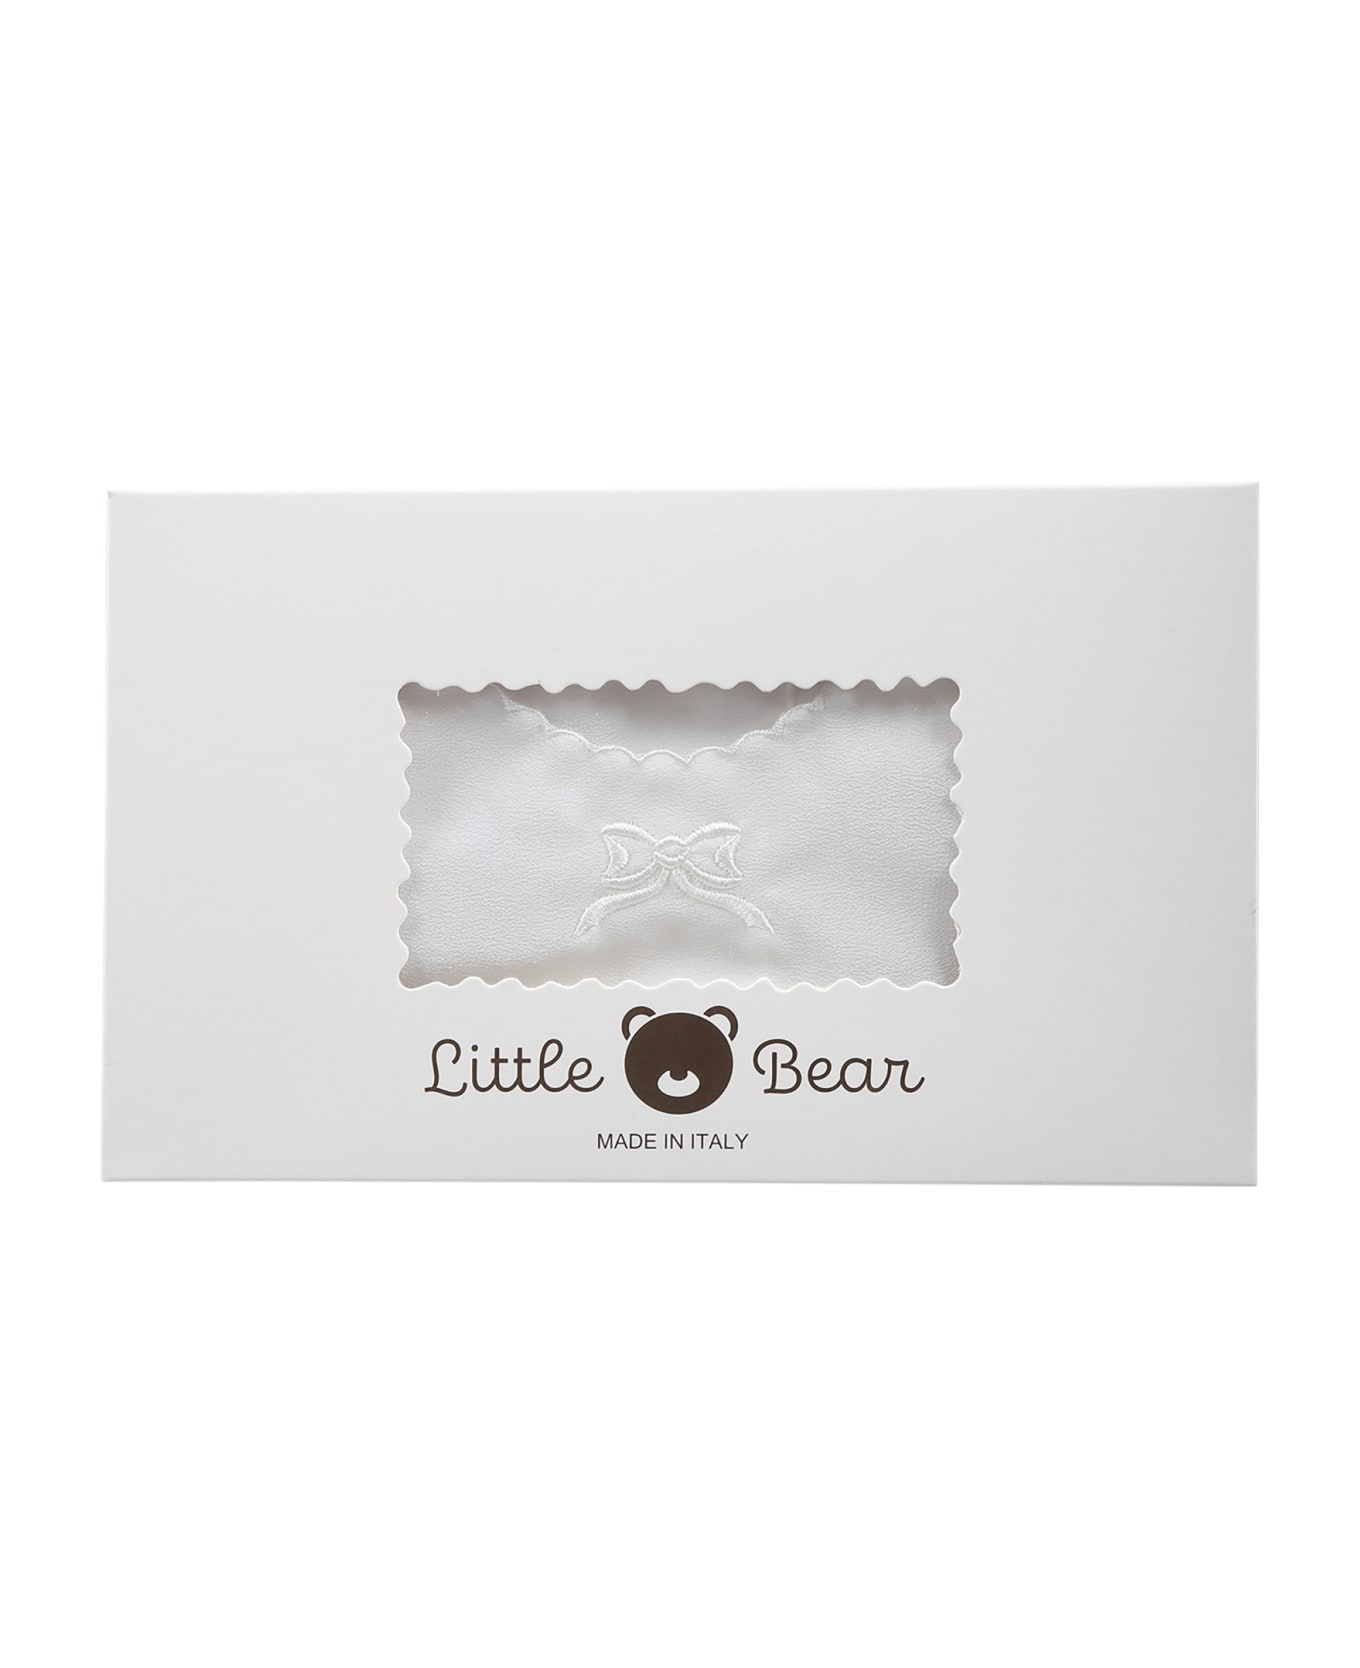 Little Bear Ivory Good-luck Newborn Shirt With Bow For Babykids - Ivory